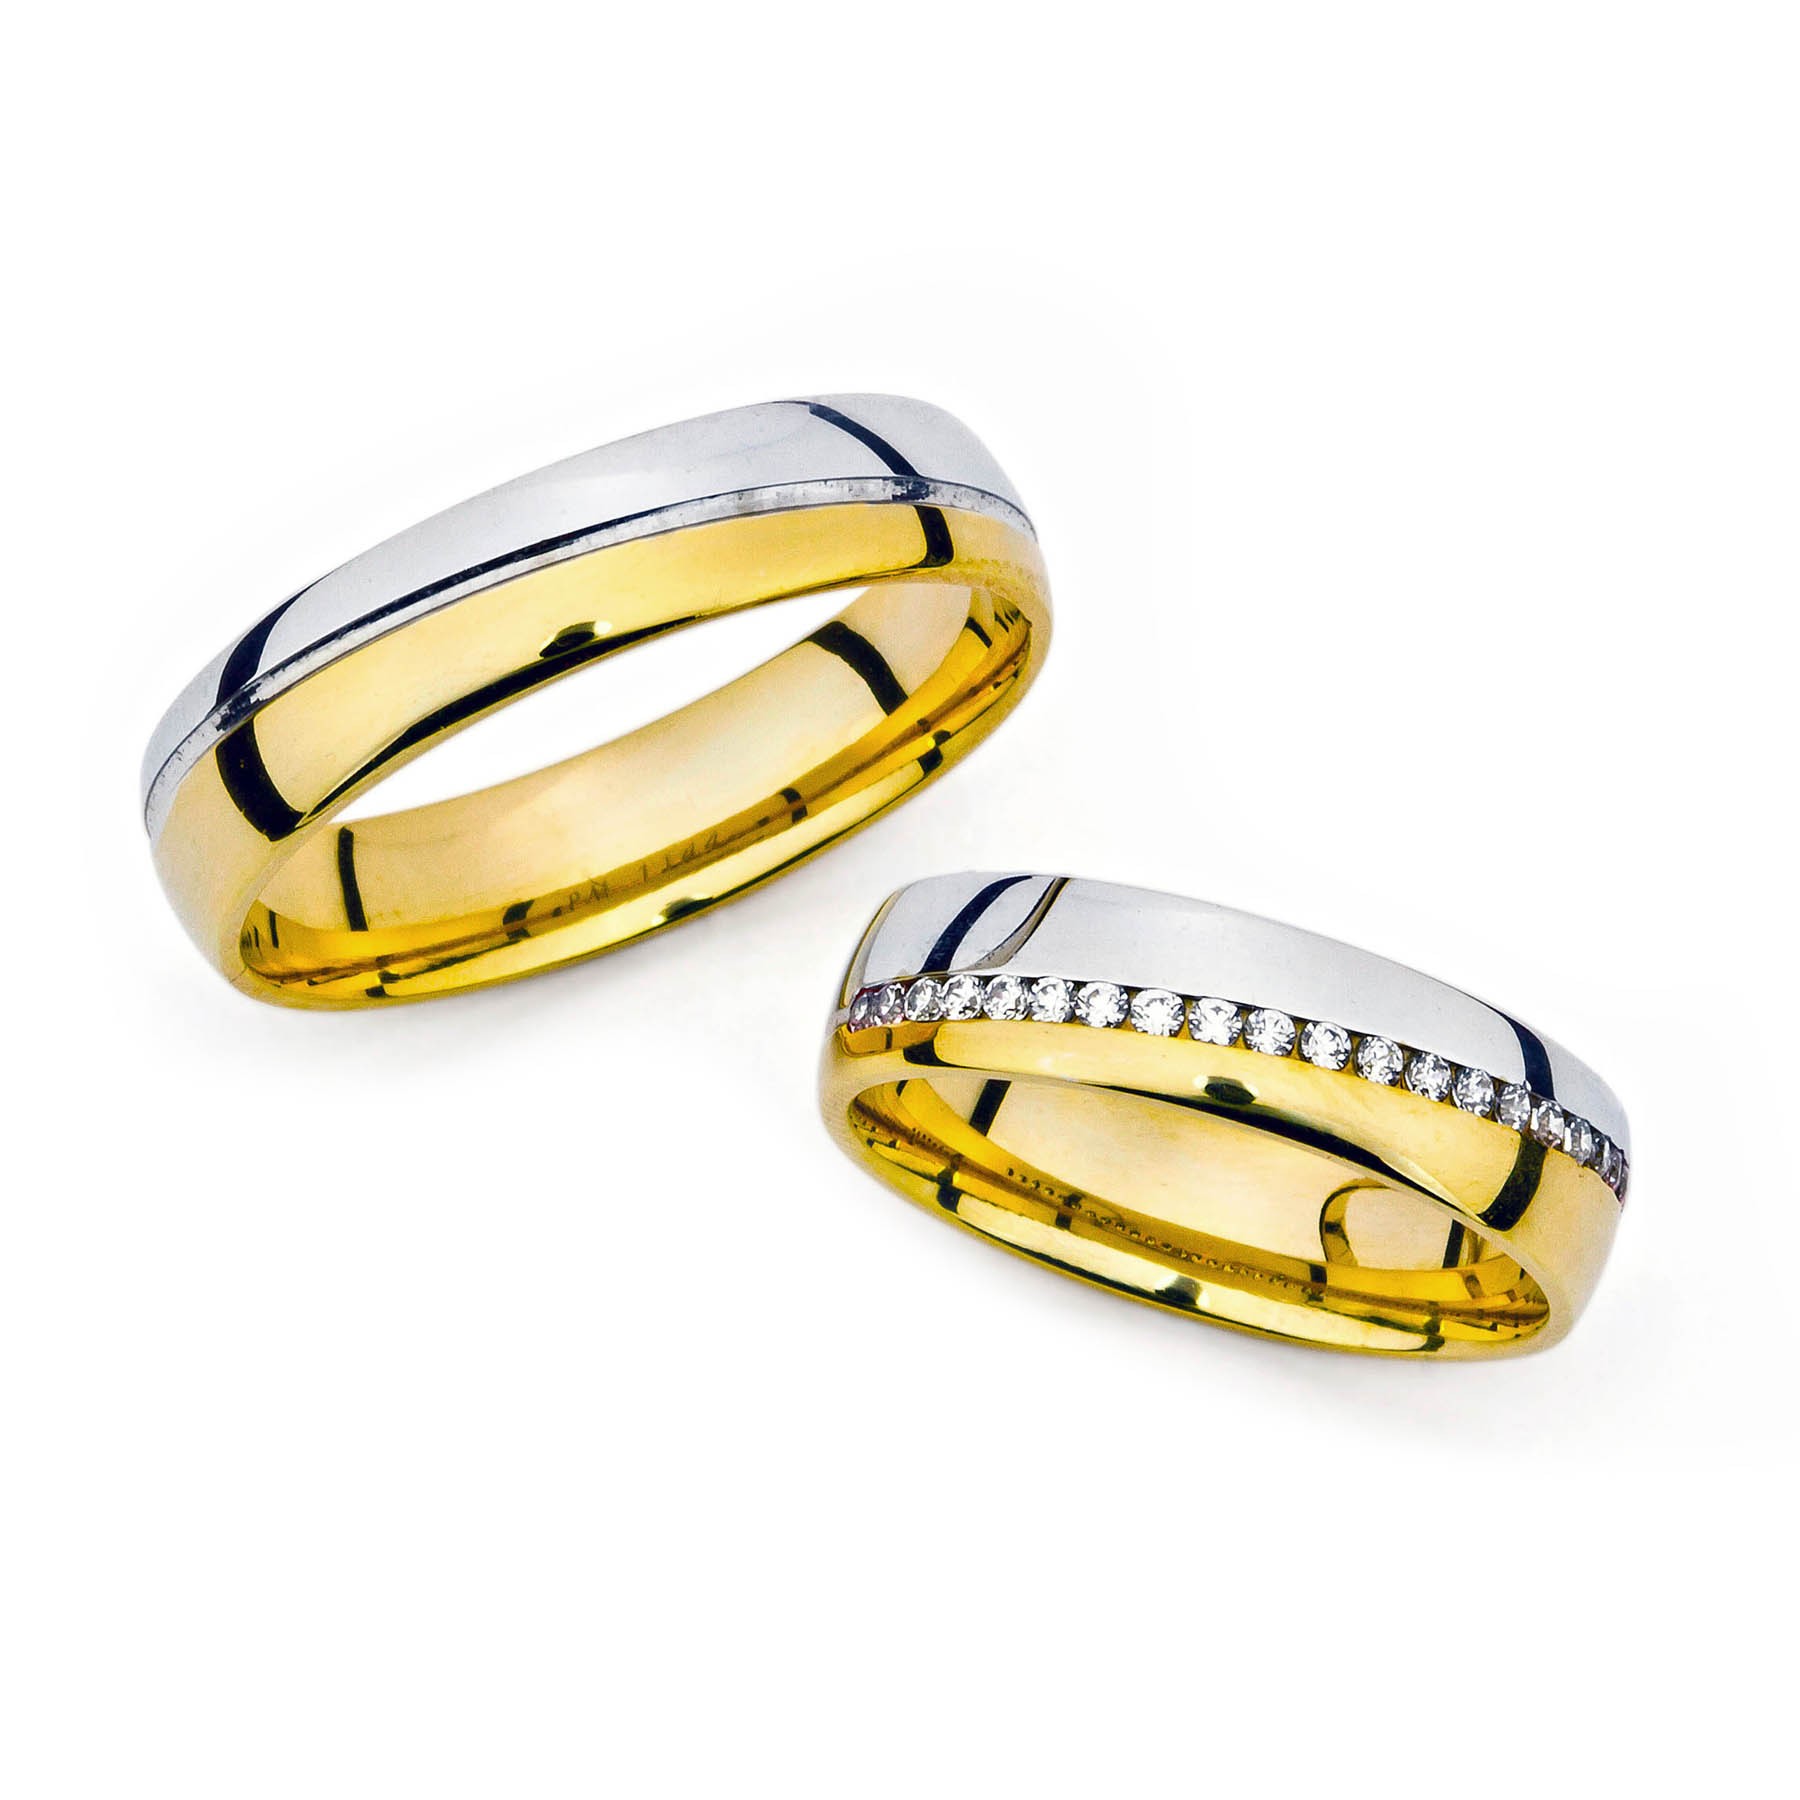 Snubní prsteny ze zlata s kameny po obvodu